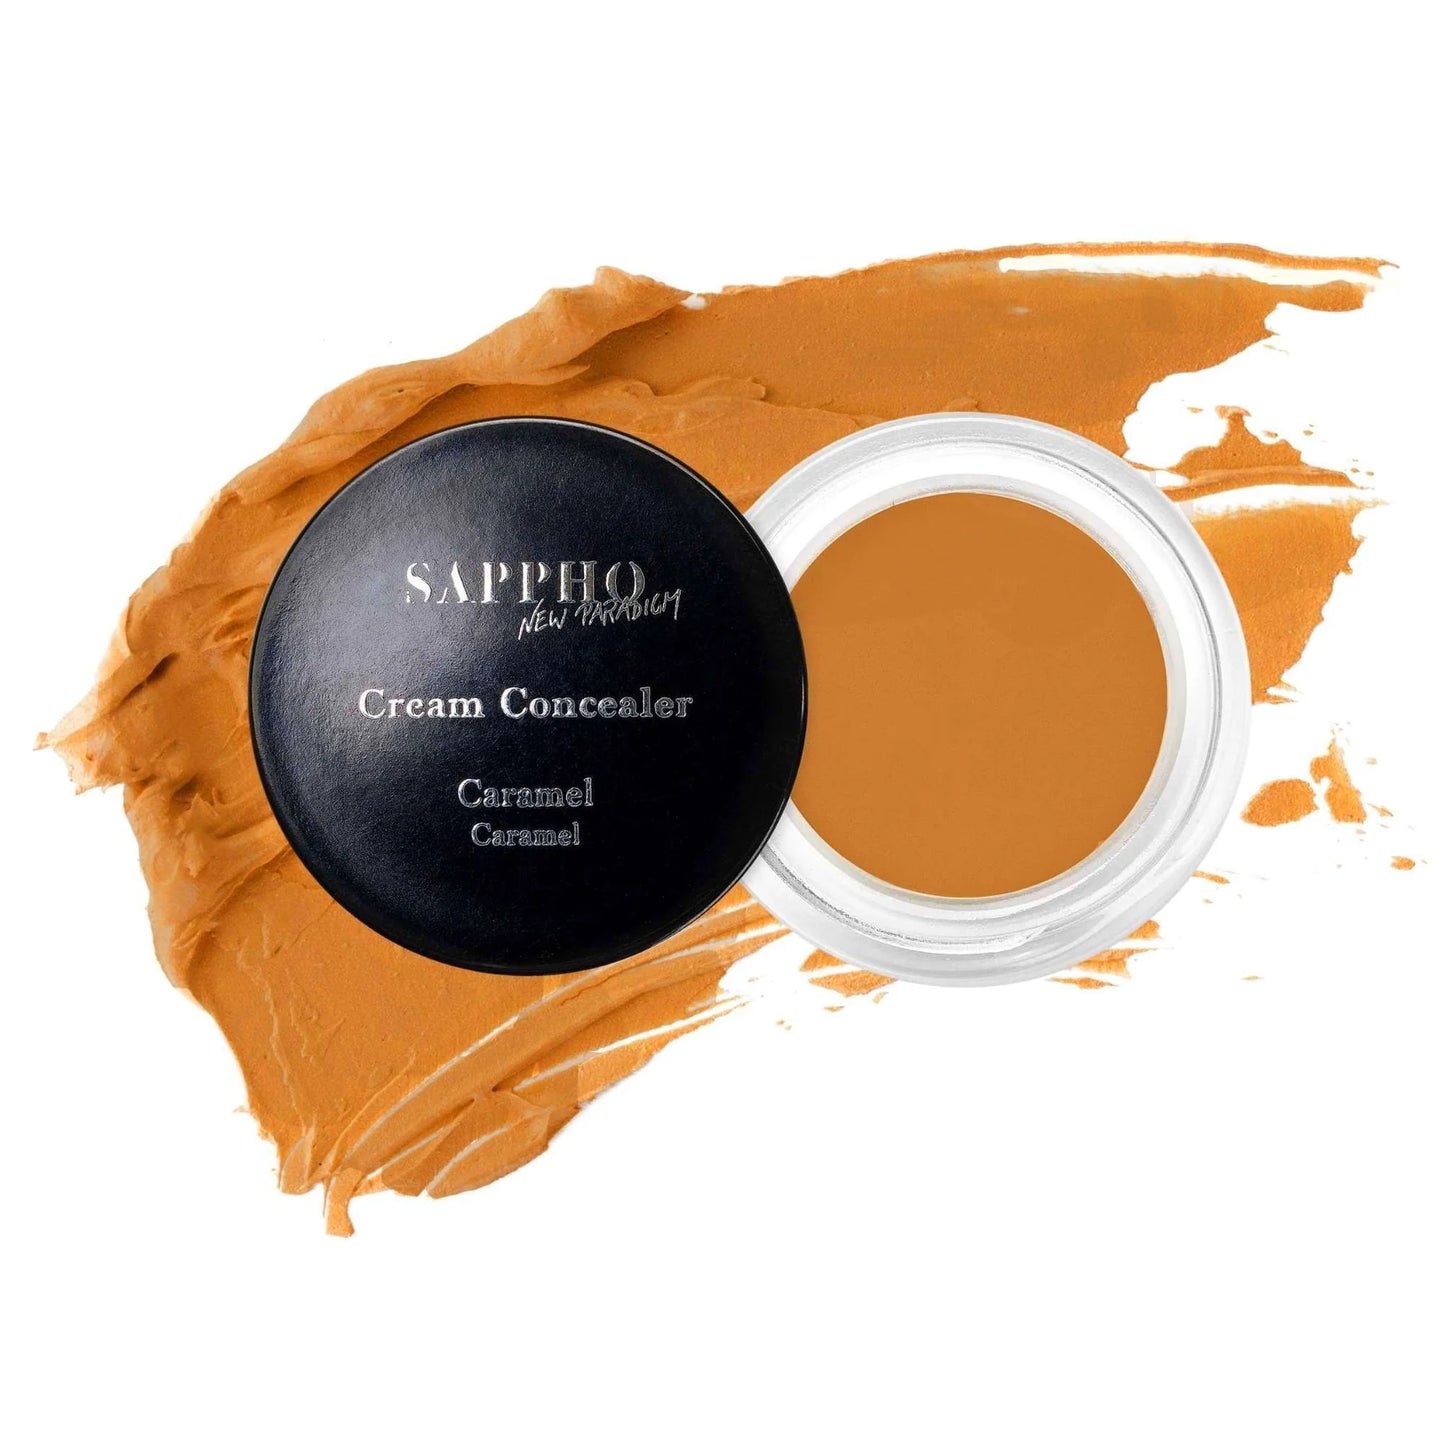 SAPPHO New Paradigm Cream Concealer Caramel